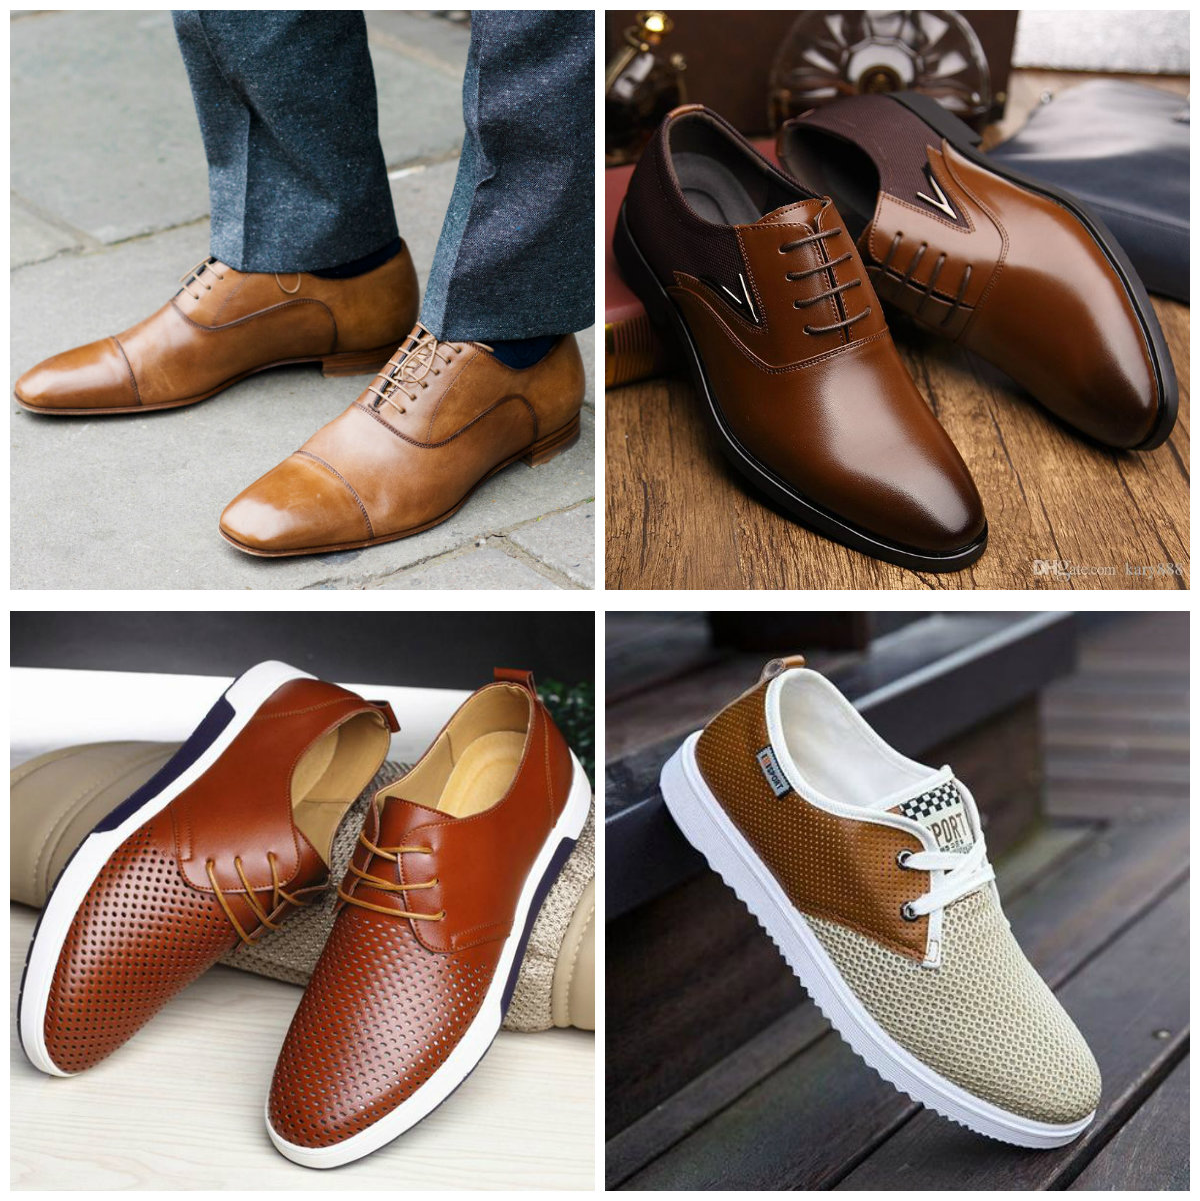 Zapatos de hombre 2018; tendencias para calzado de hombre | Tendencias de moda | Постила